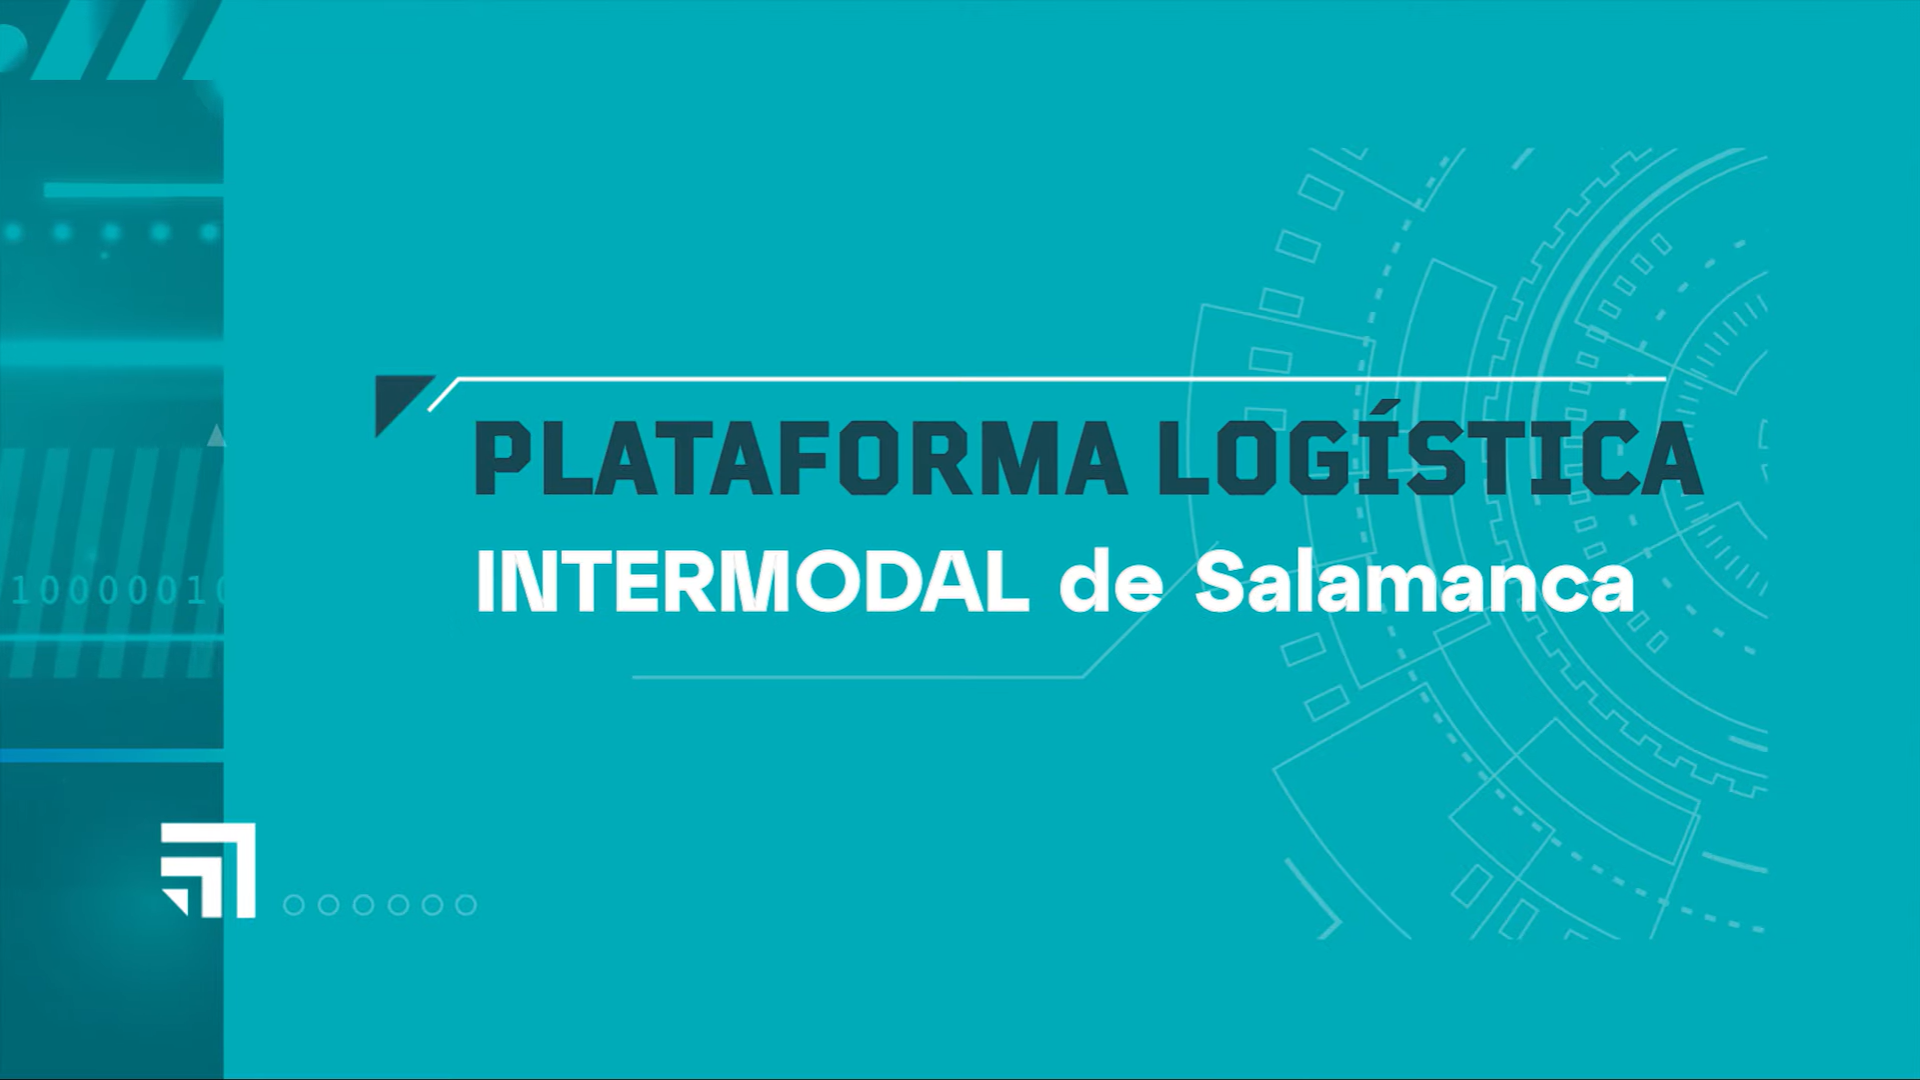 VÍDEO. Conoce todos los detalles de la Plataforma Logística Intermodal de Salamanca